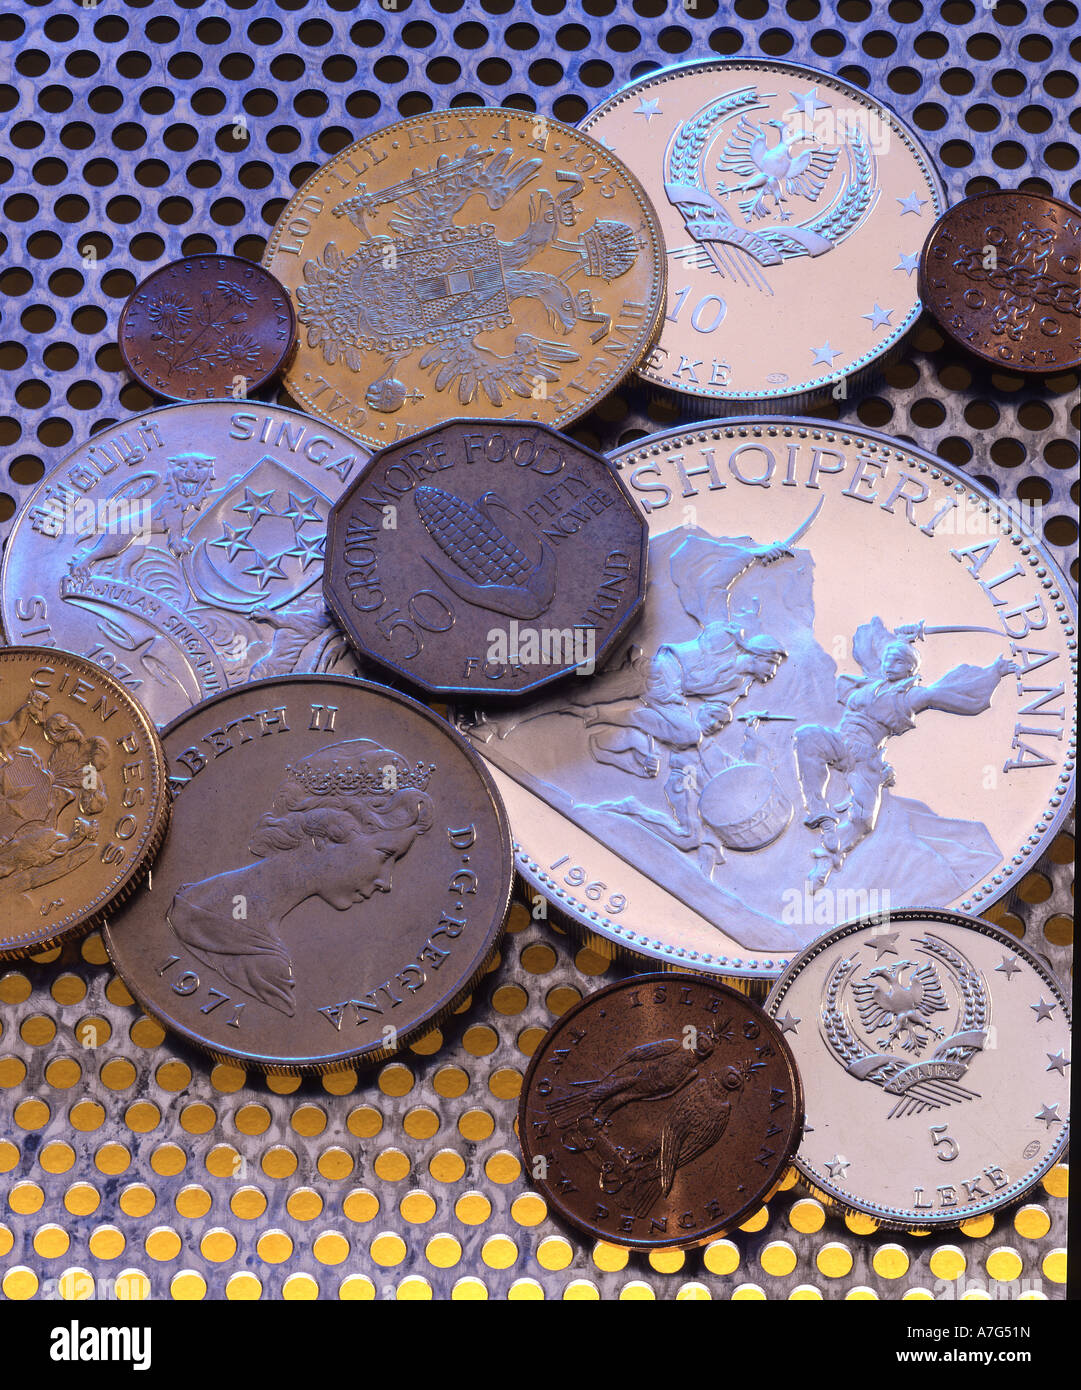 Muenzen aus verschiedenen Laendern coins from different countries Stock Photo